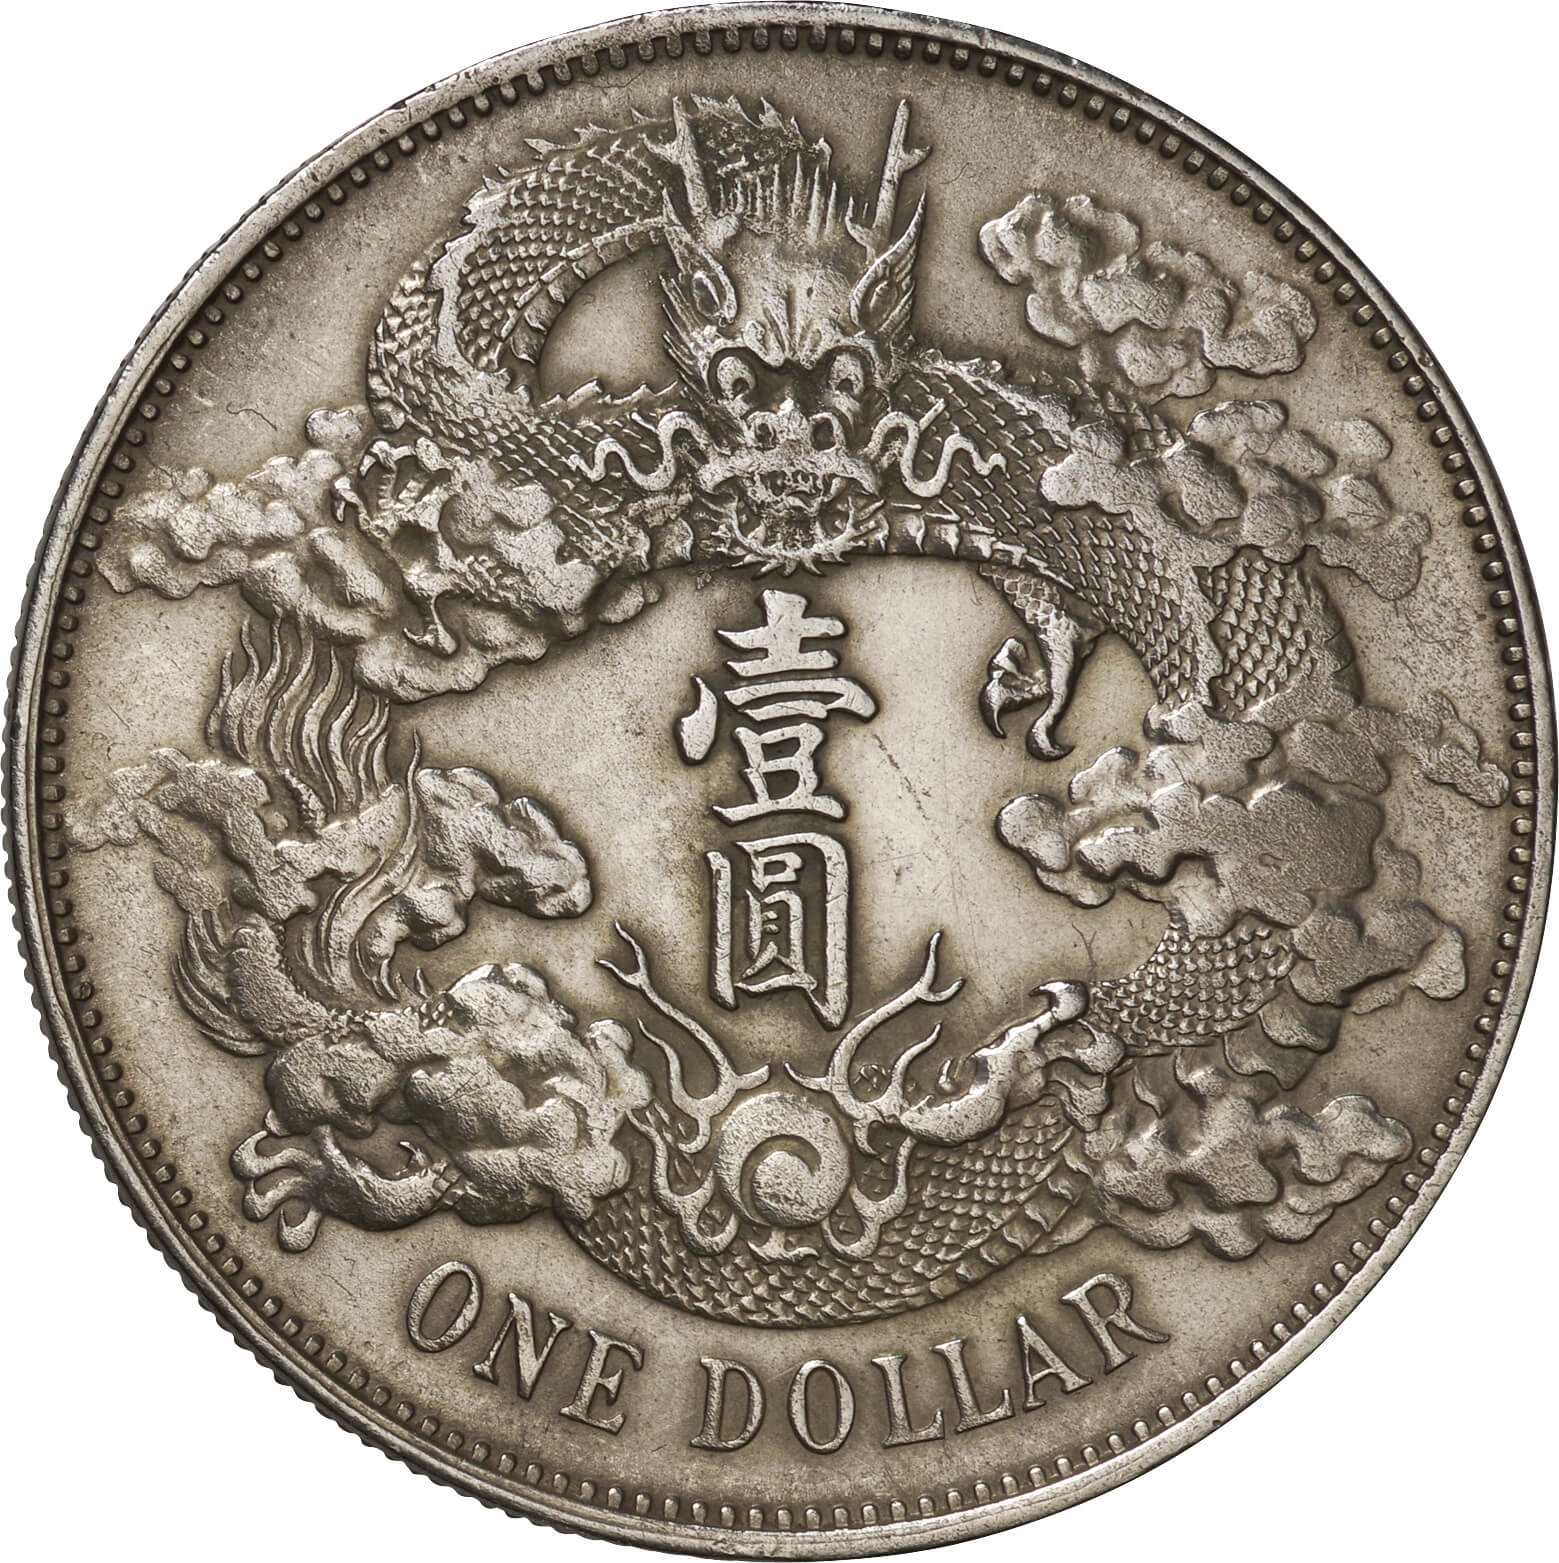 清-Qing. 1911. 極美. EF. Silver. ﾄﾞﾙ(Dollar). 大清帝国 大清銀幣 壹